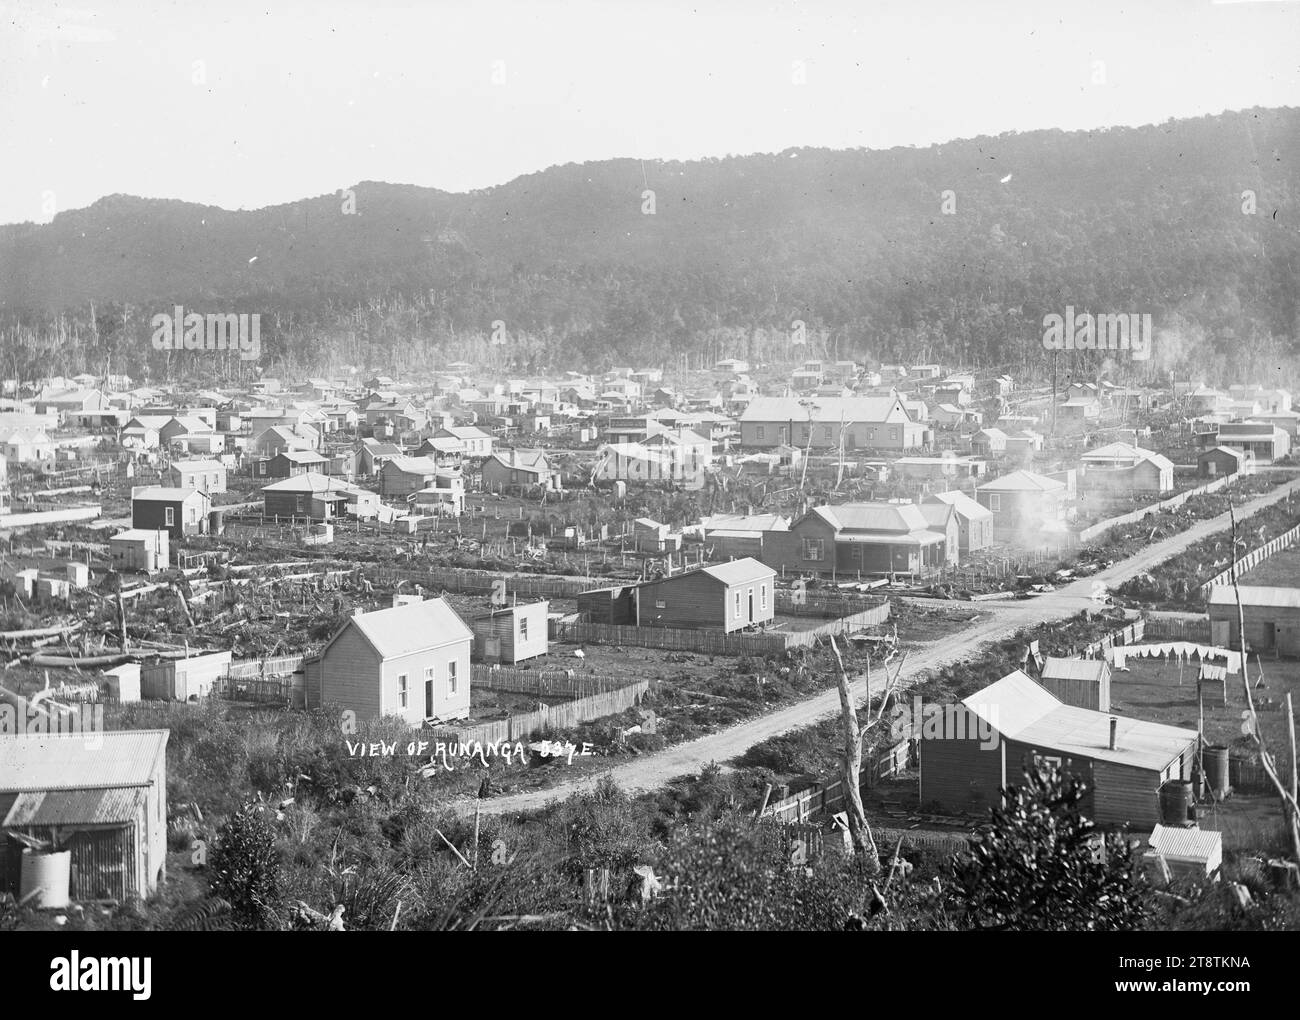 Township of Runanga, Township of Runanga, um 1910. Die Ward Street ist im Vordergrund. Die Miners Hall ist im Zentrum Stockfoto